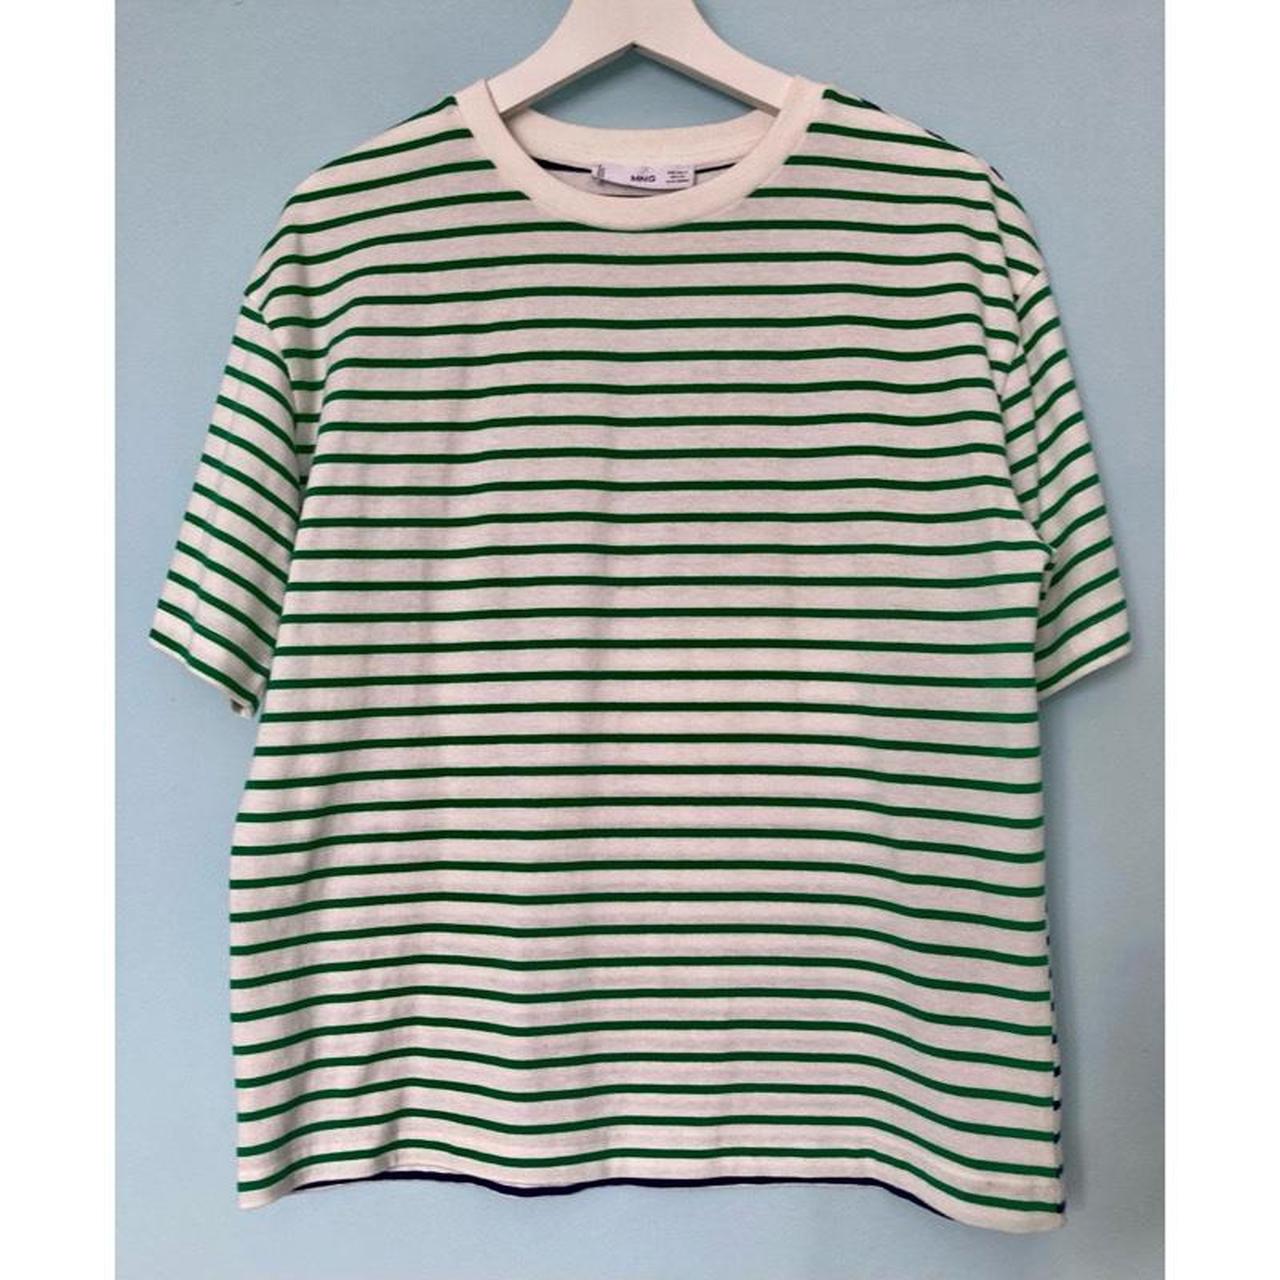 Mango Striped Boxy Cotton T-Shirt👕 Green & White... - Depop